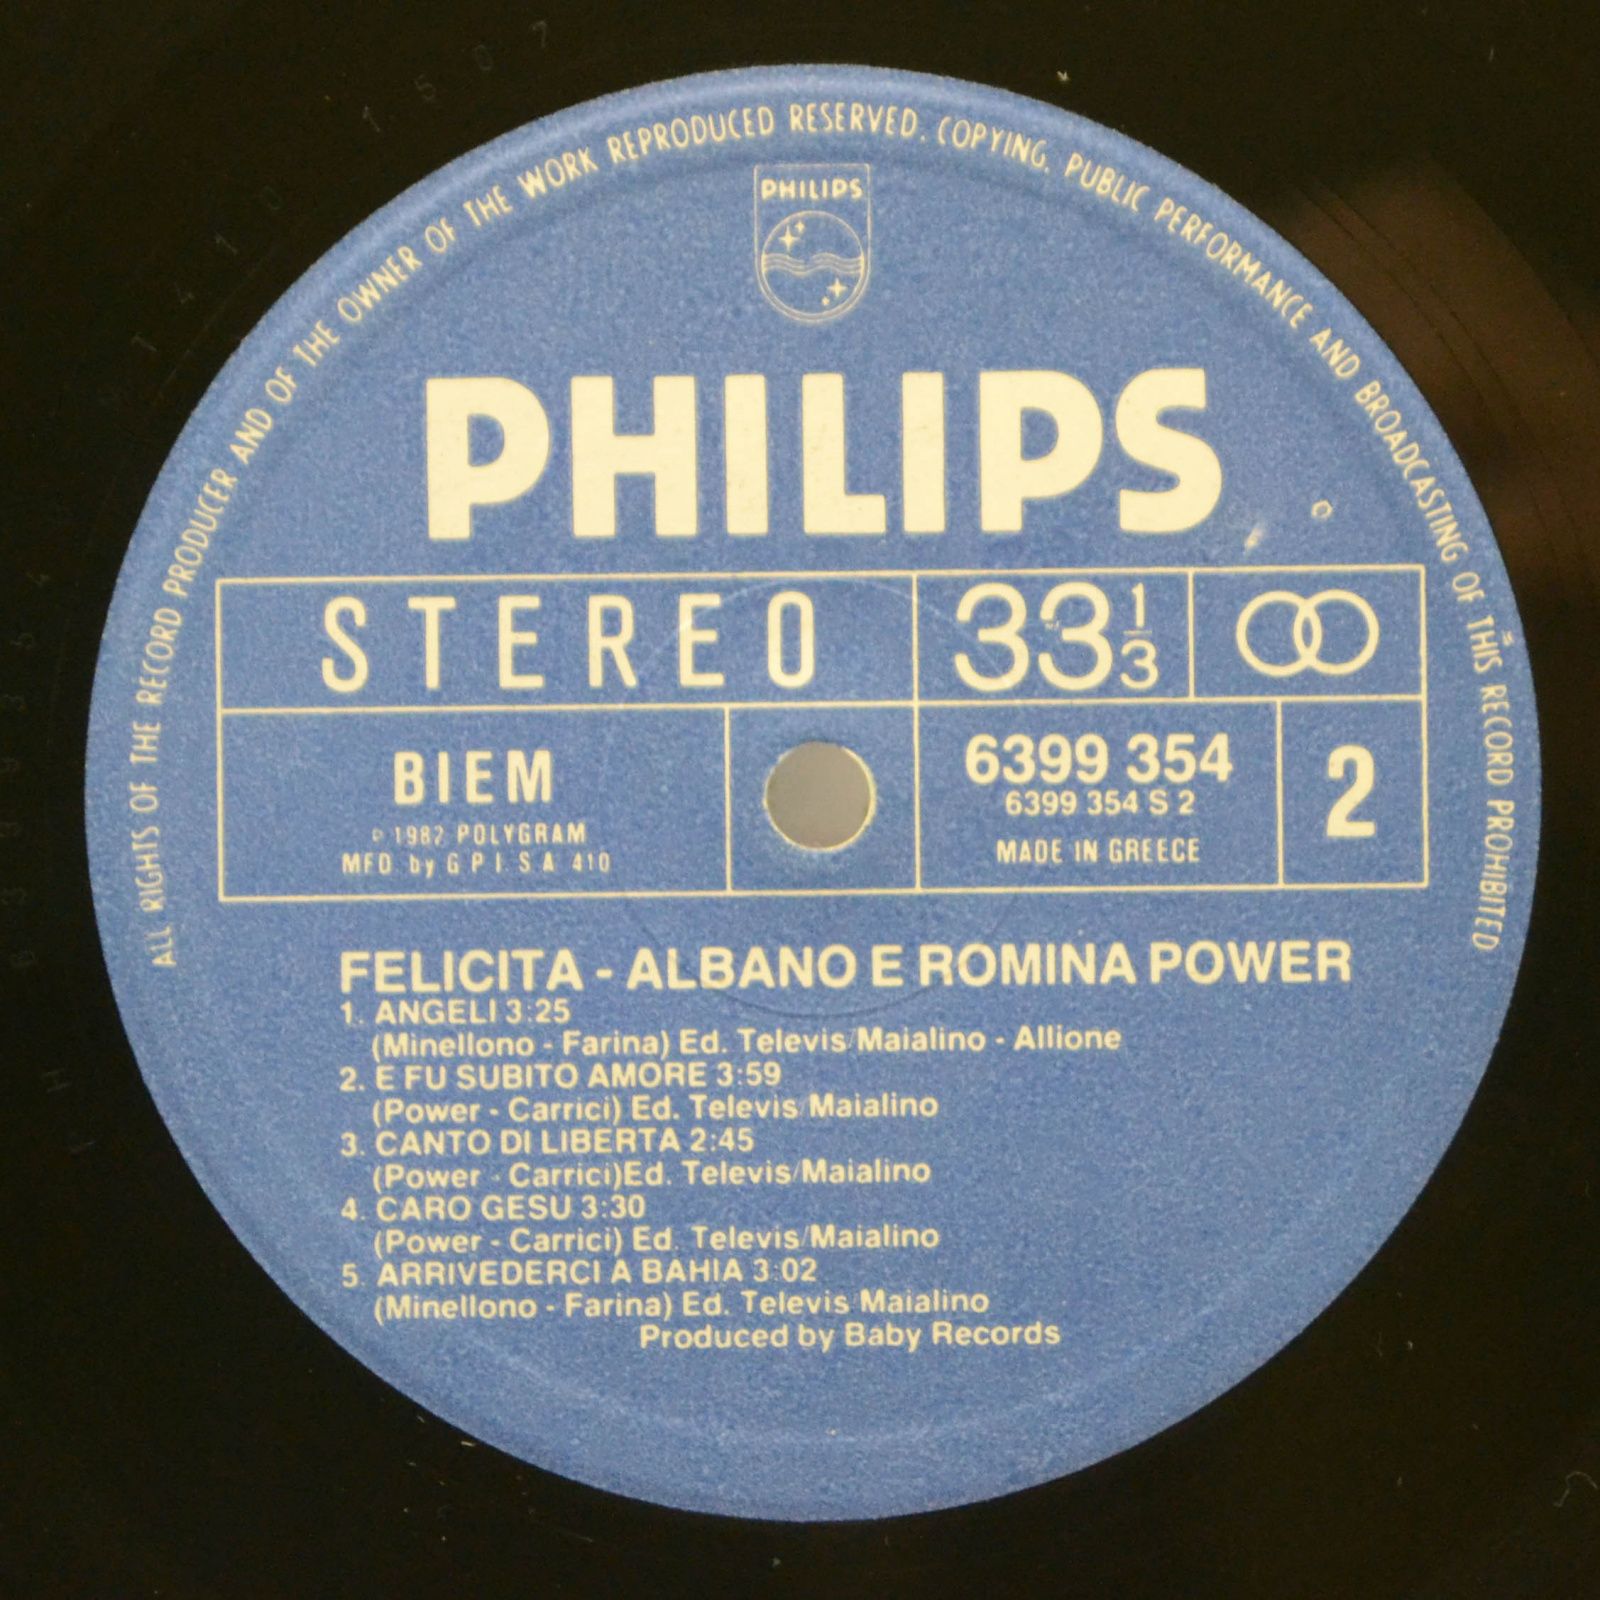 Al Bano & Romina Power — Felicità, 1982